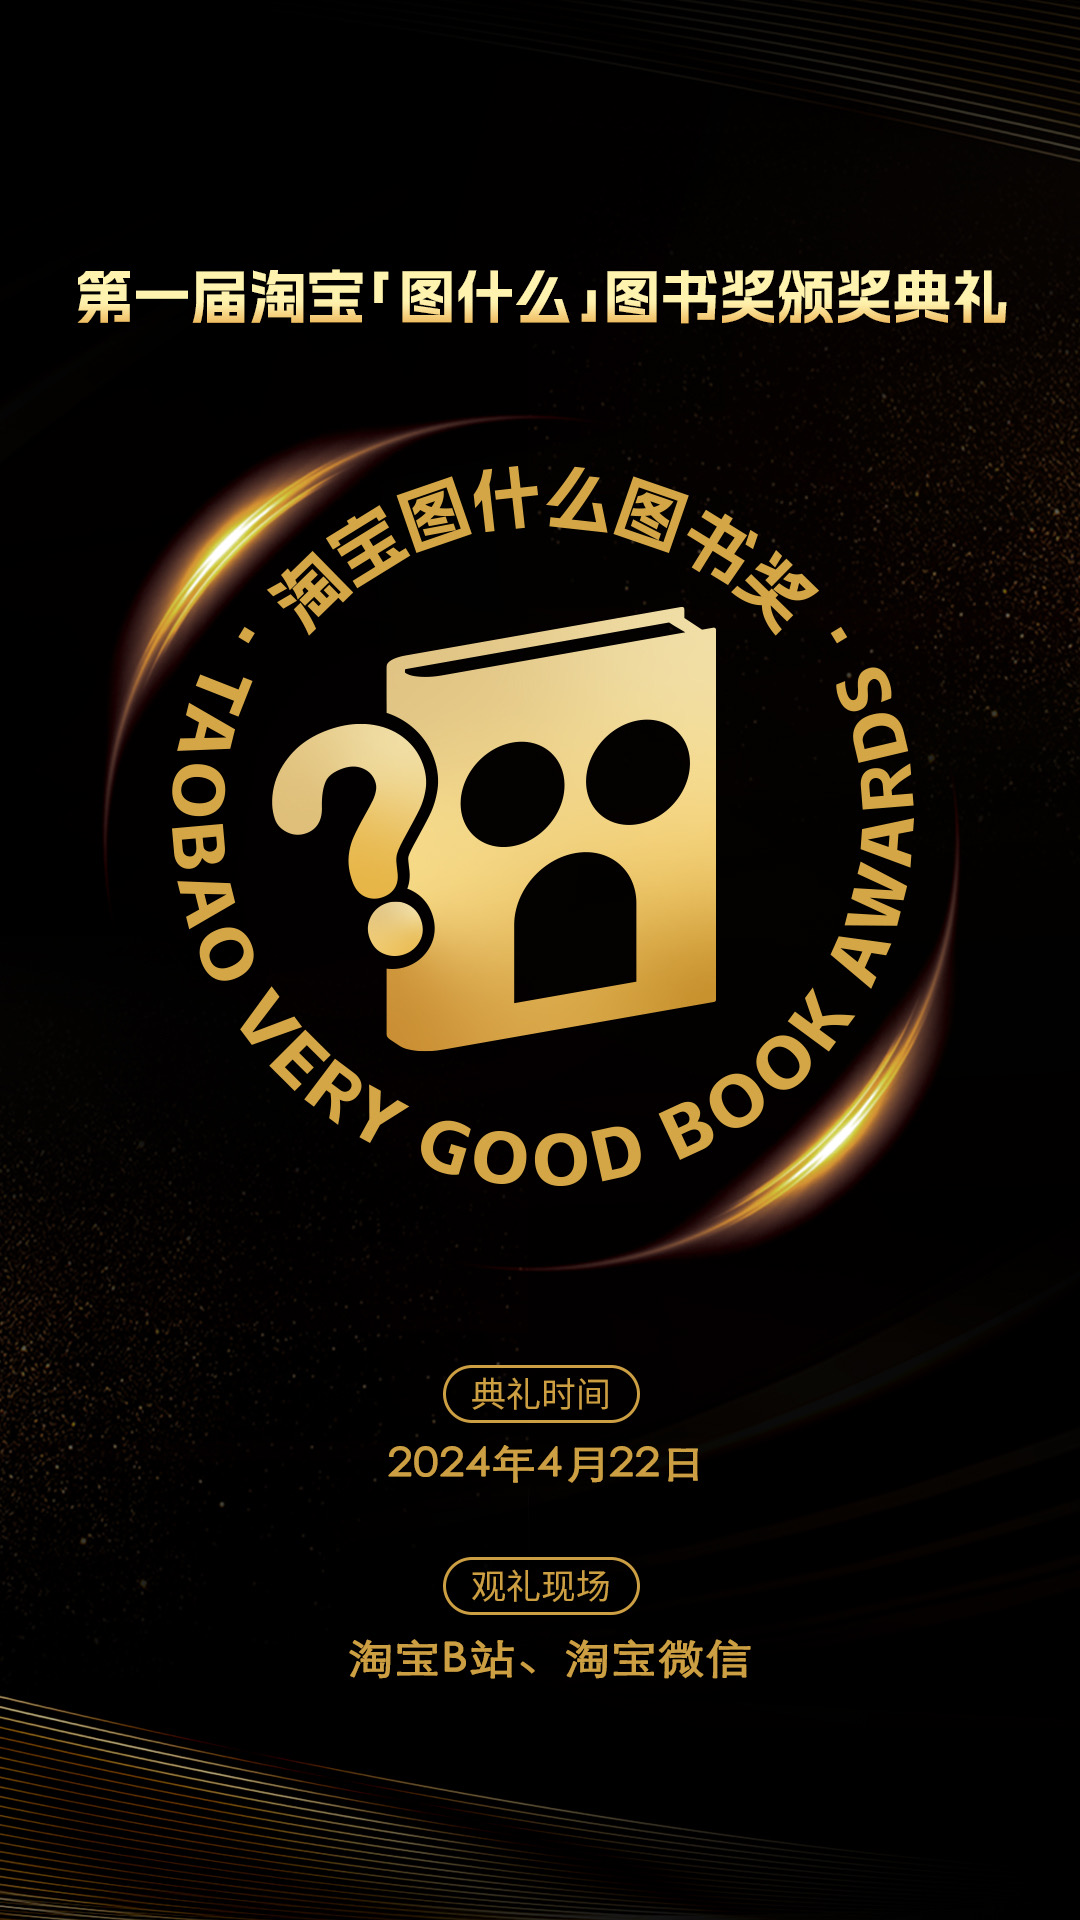 淘宝宣布4月22日举办首届图书奖 麦家、刘墉、汤家凤等知名作家将出席